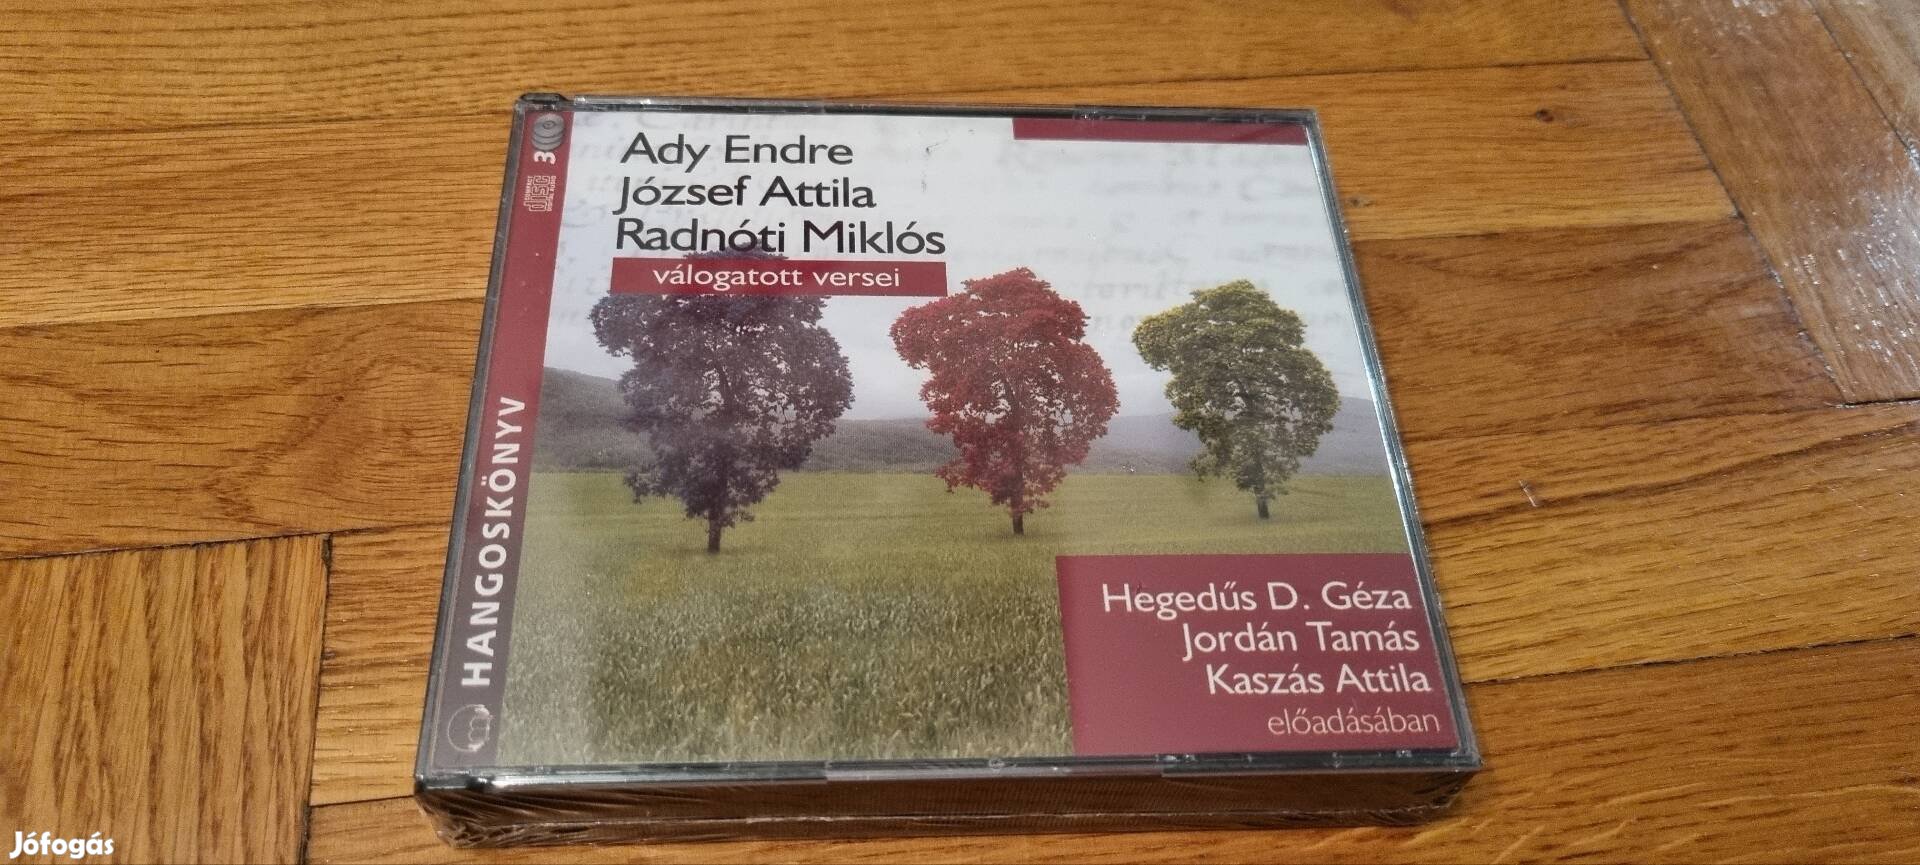 Ady Endre, József Attila, Radnóti Miklós válogatott versei cd 